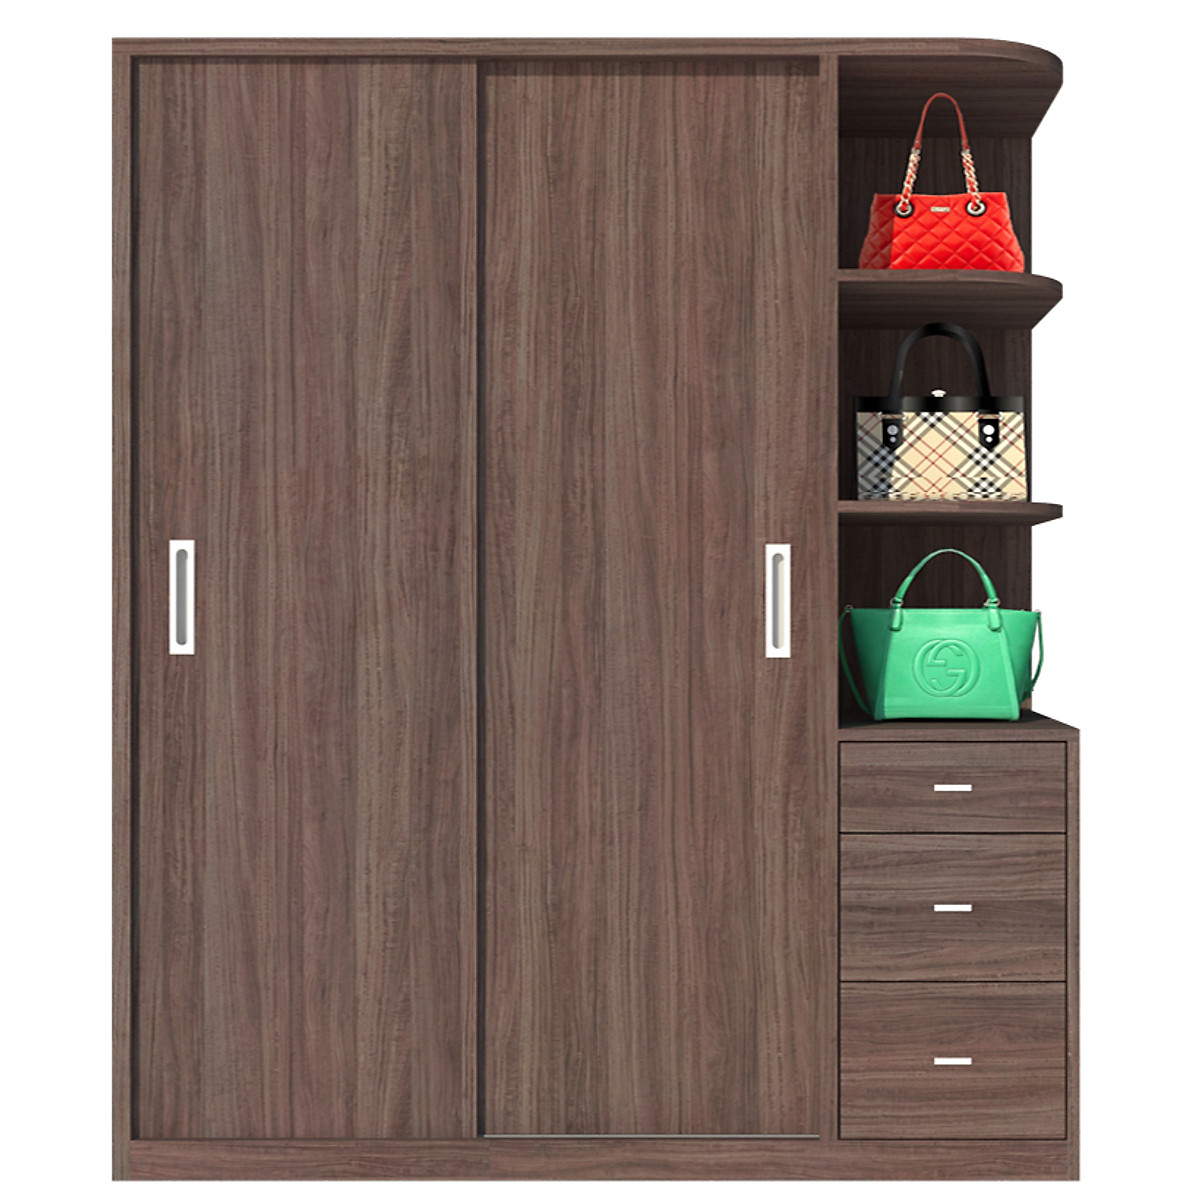 Tủ quần áo gỗ MDF Tundo cửa lùa màu nâu 180 x 55 x 200cm